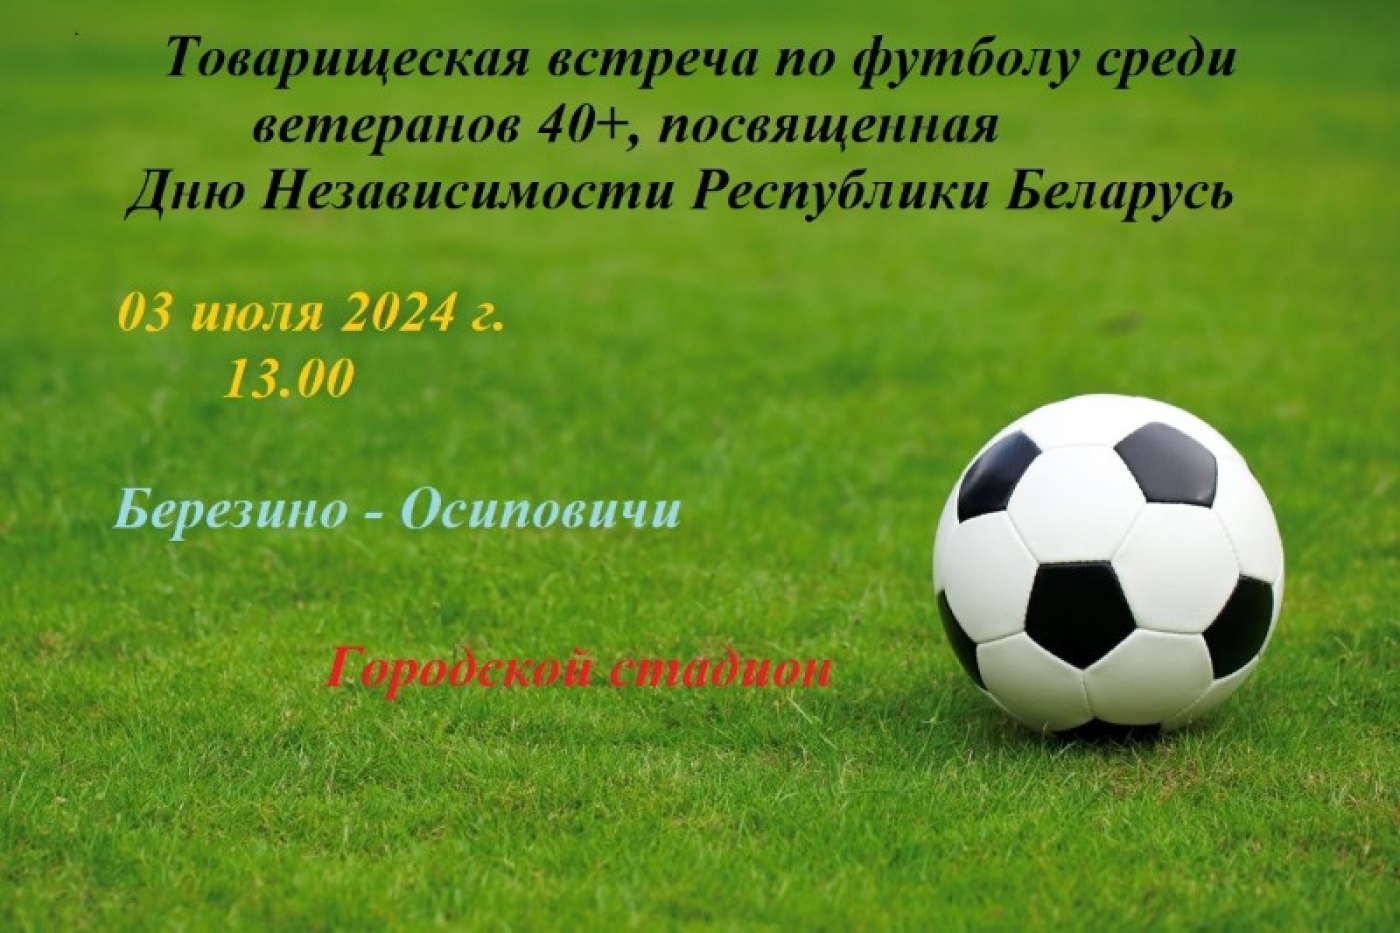 Футбольный матч ко Дню Независимости Республики Беларусь